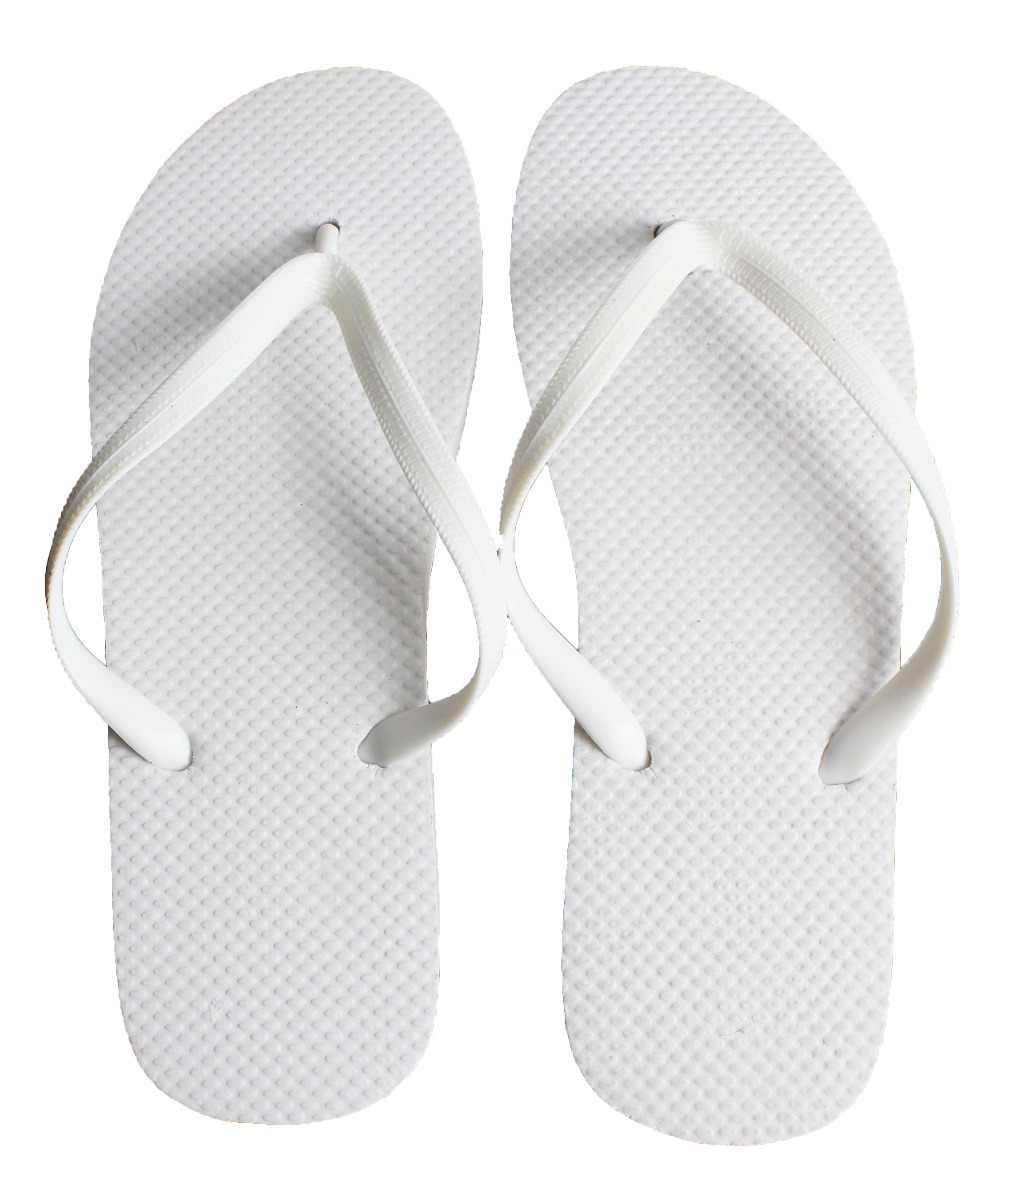 WHOLESALE LOT 48 Pairs Women's Floral Beach Sandals Flip Flop Two Tone印花--388L 